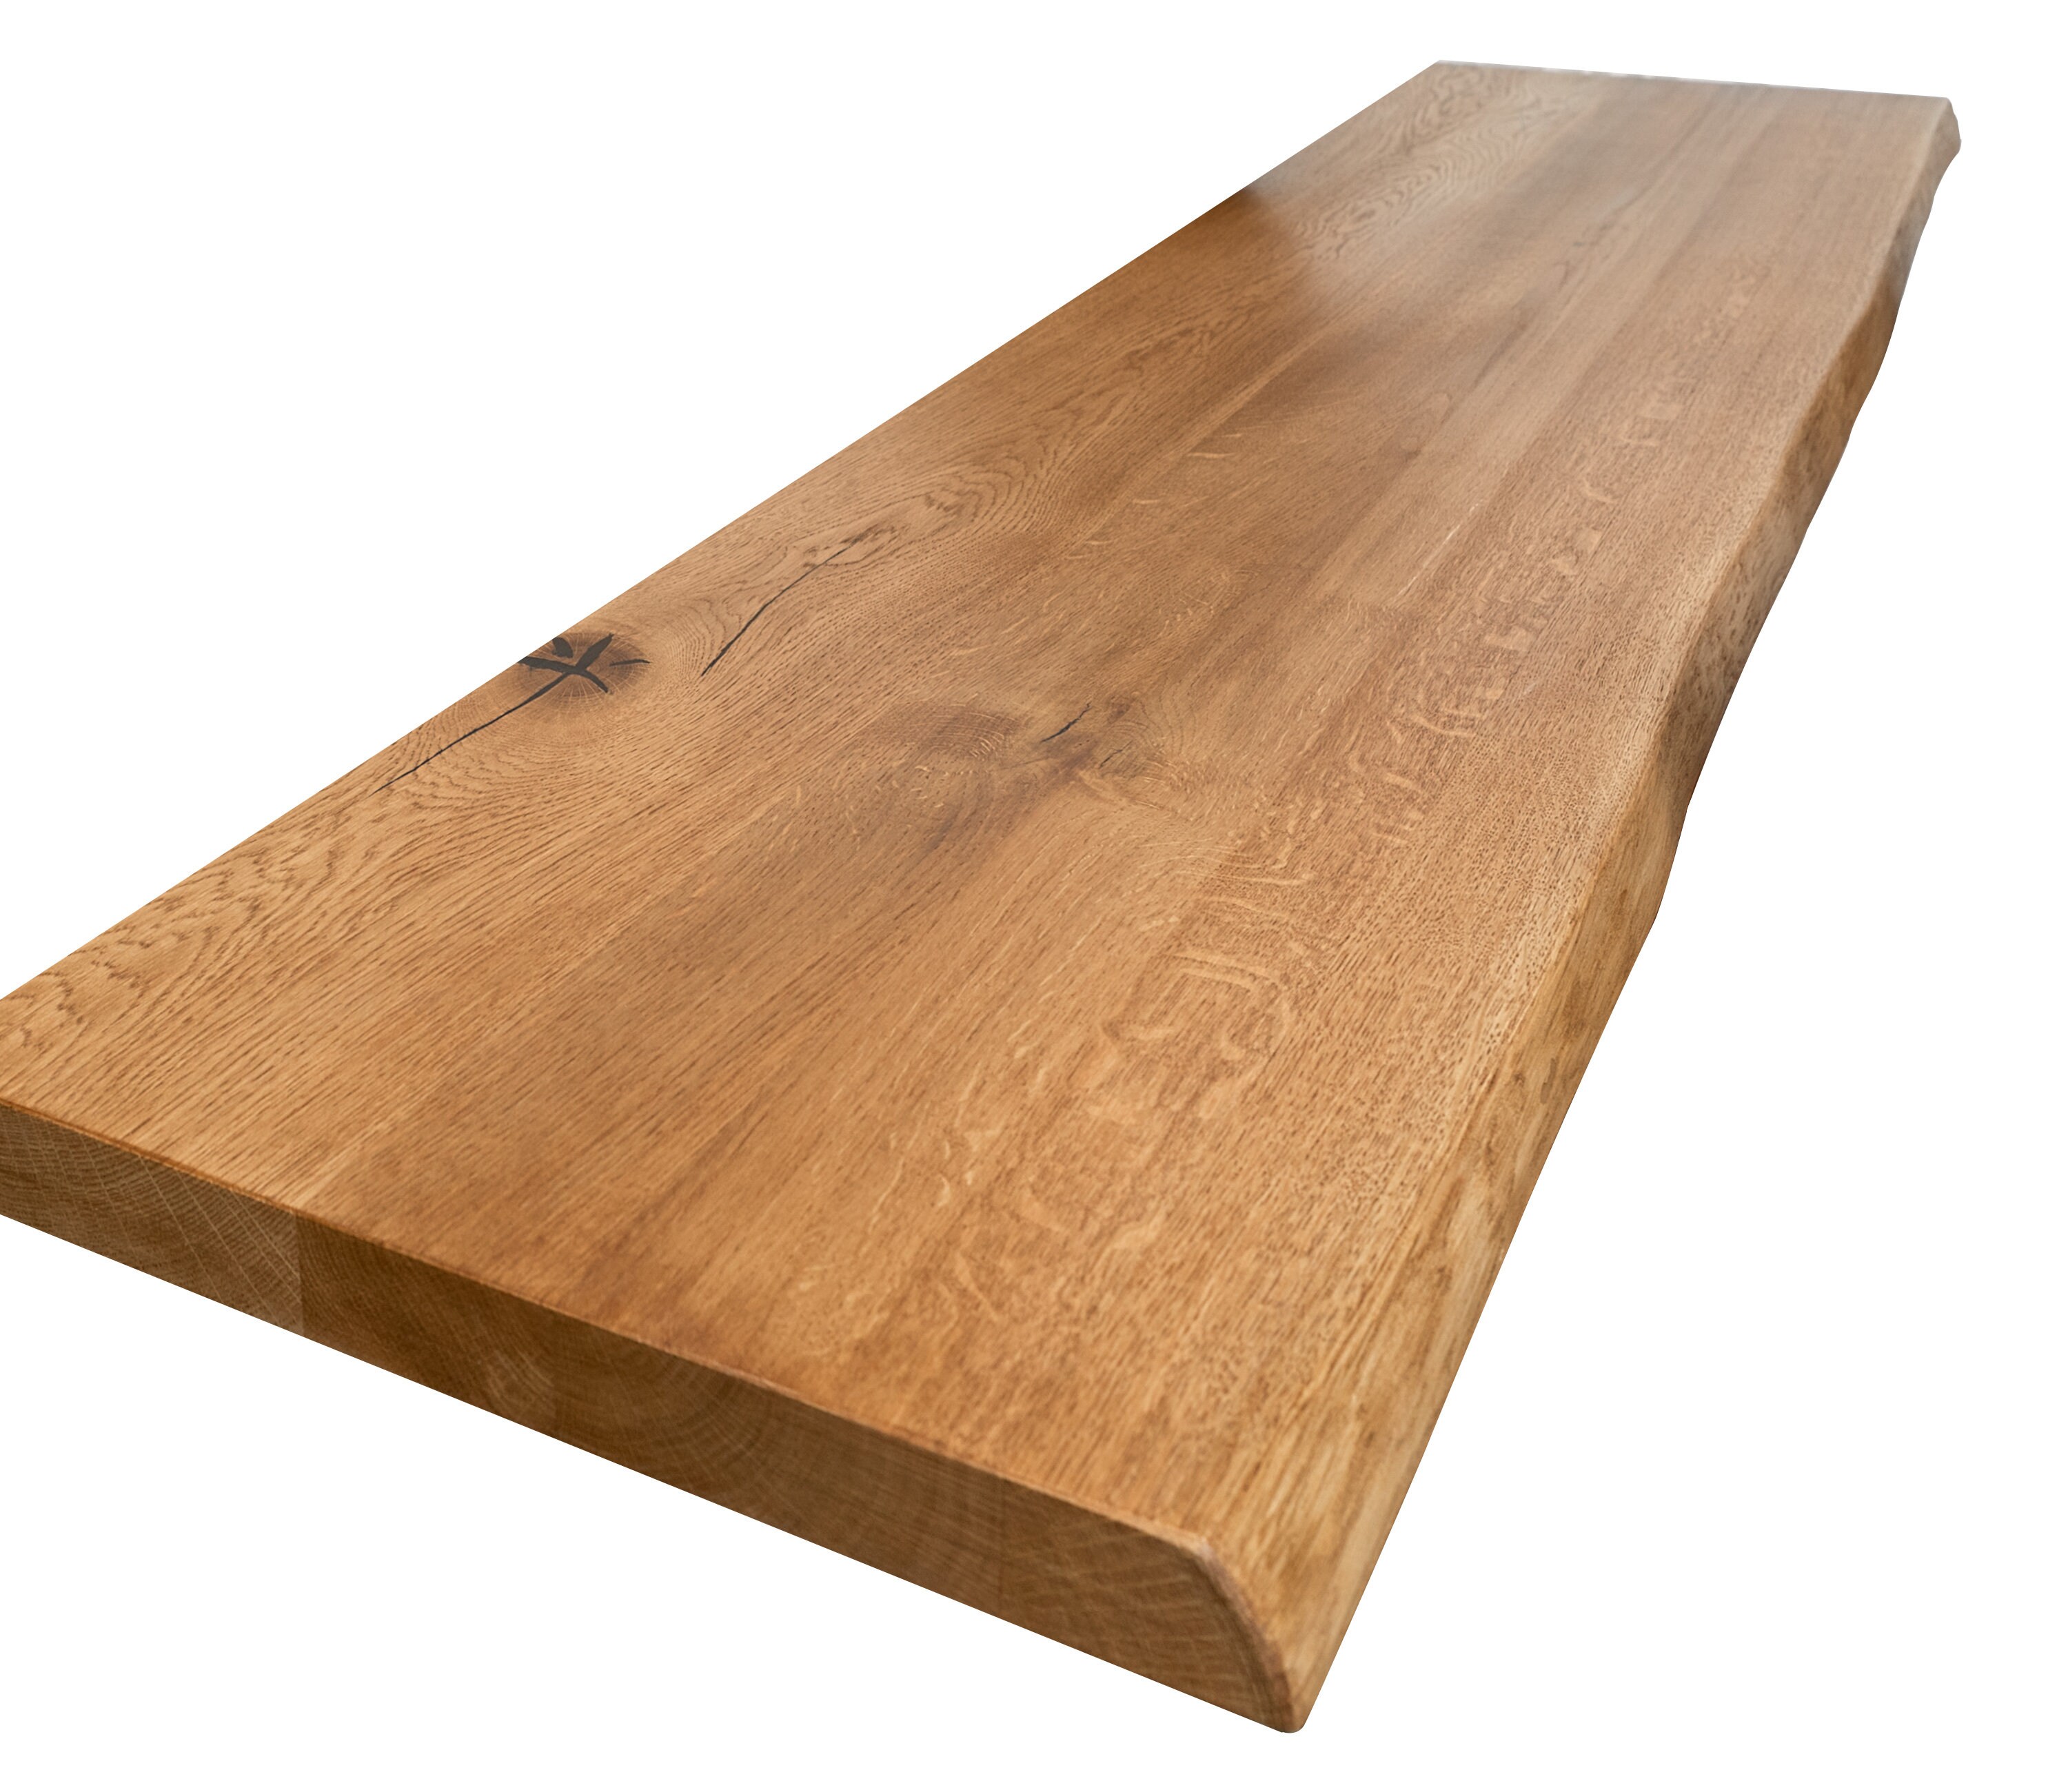 Tablero de mesa cuadrado de madera maciza de haya 50x50x1.5 cm